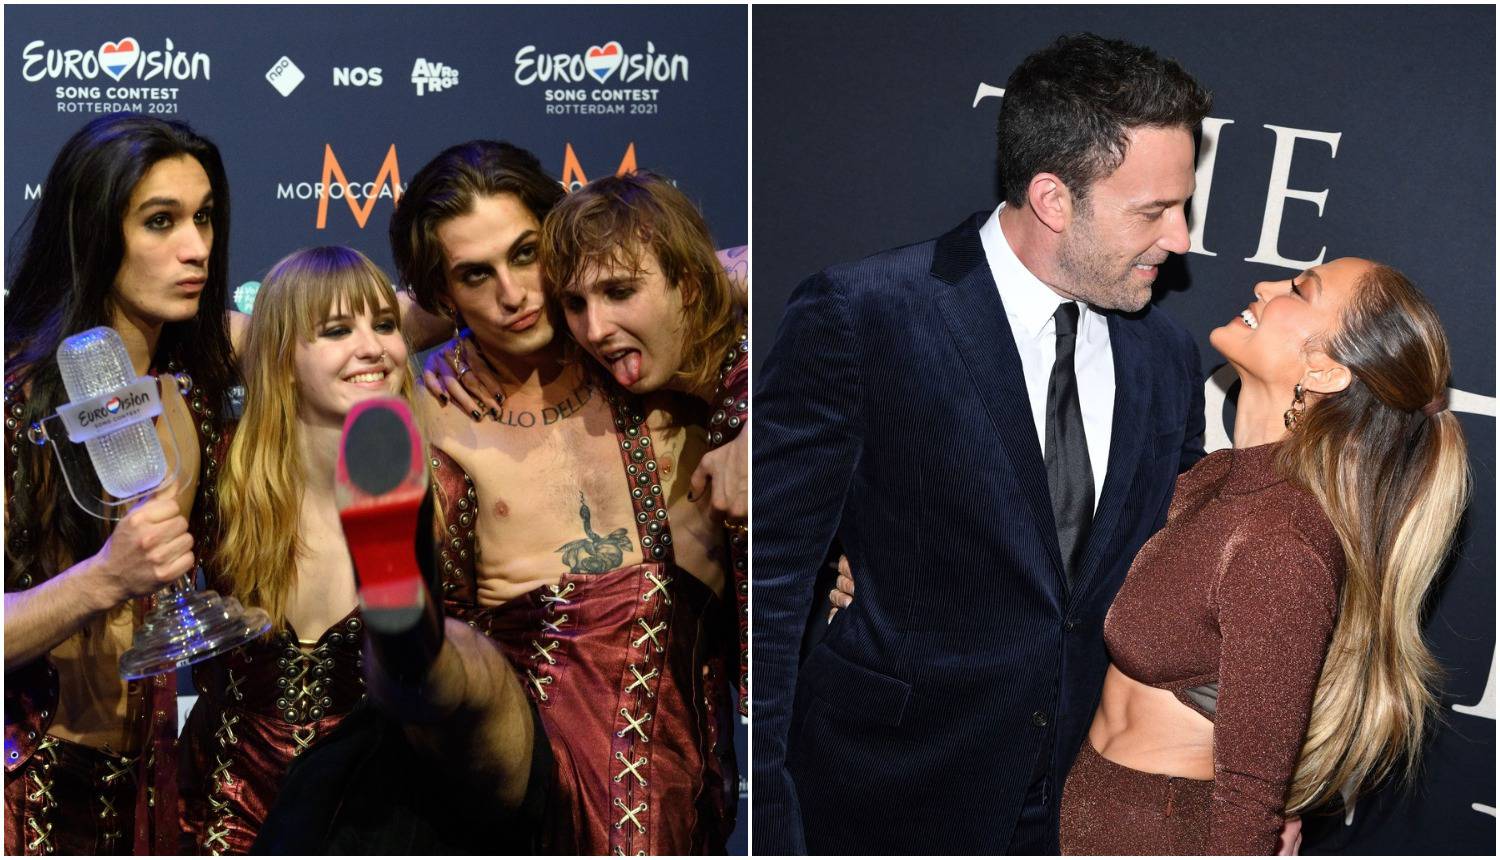 Sanremo otvara Maneskin, a svi se nadaju dolasku J.Lo i Afflecka